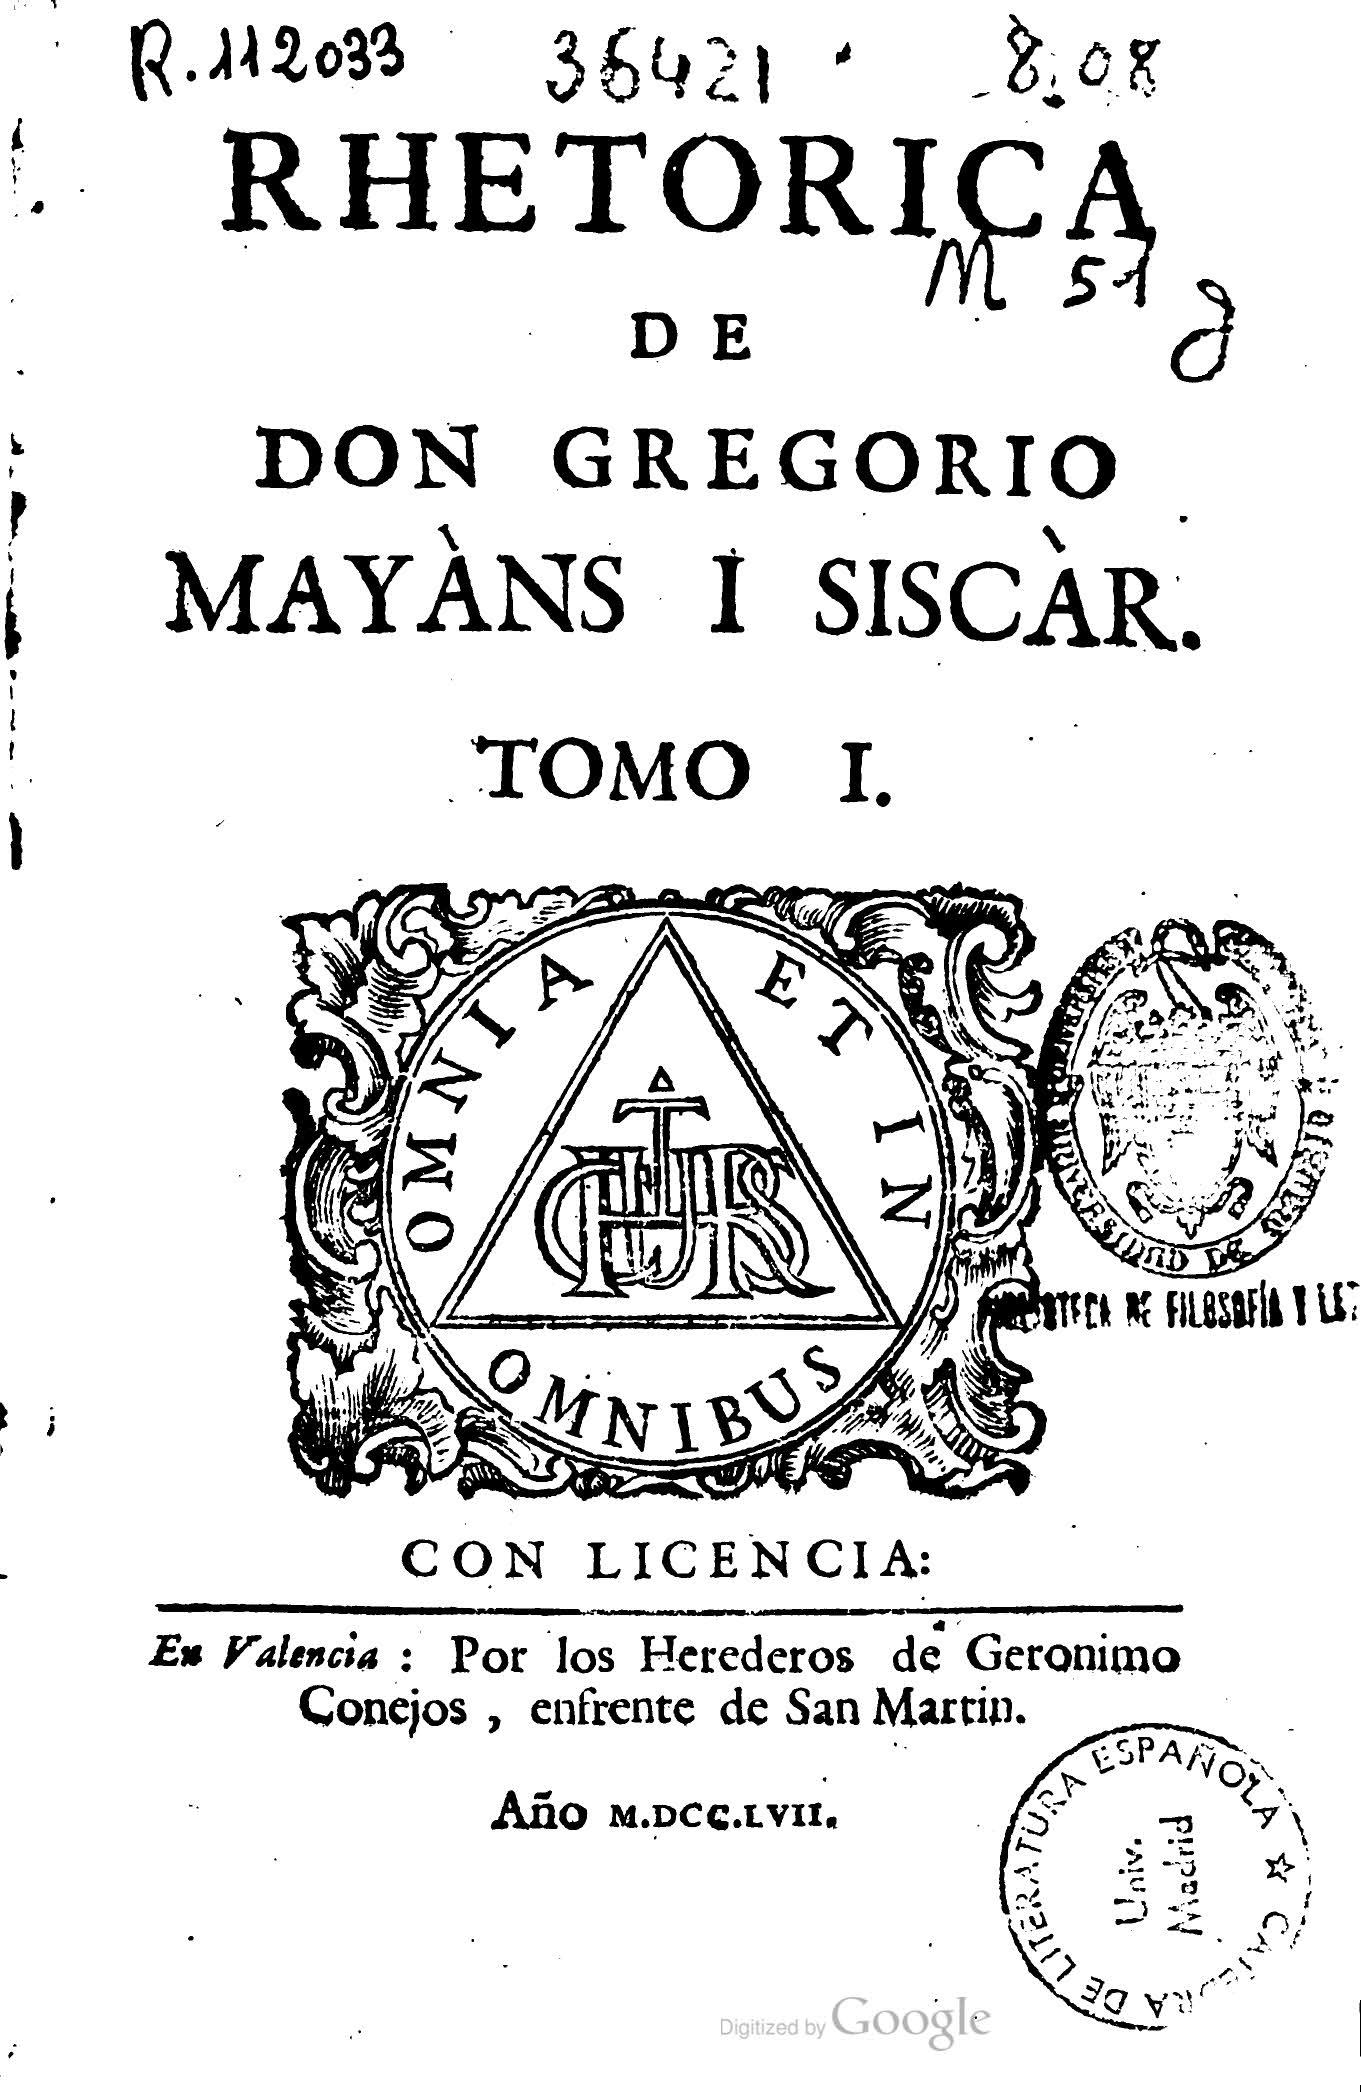 Rethorica de Don Gregorio Mayans i Siscar, Tomo I